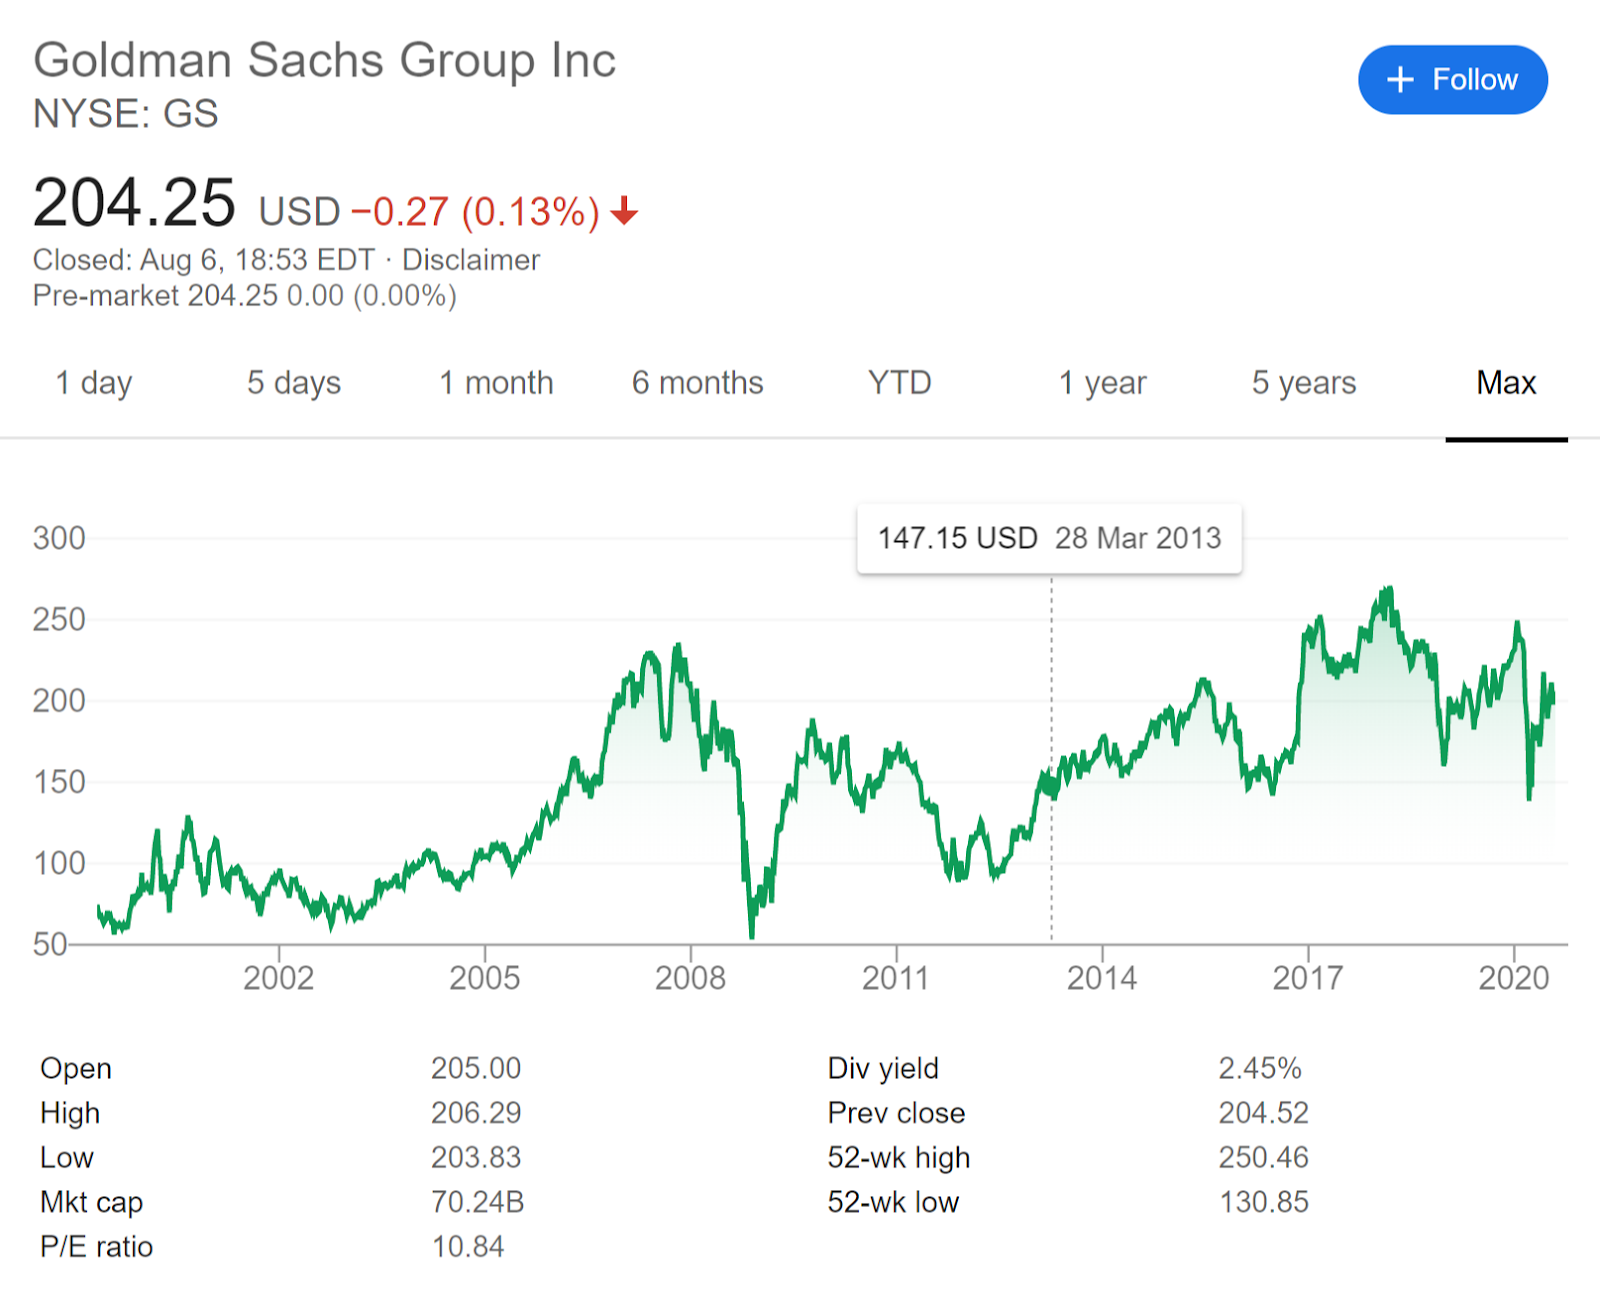 نمودار نشان دهنده قیمت سهام بلند مدت Goldman Sachs Group Inc. منبع: Google